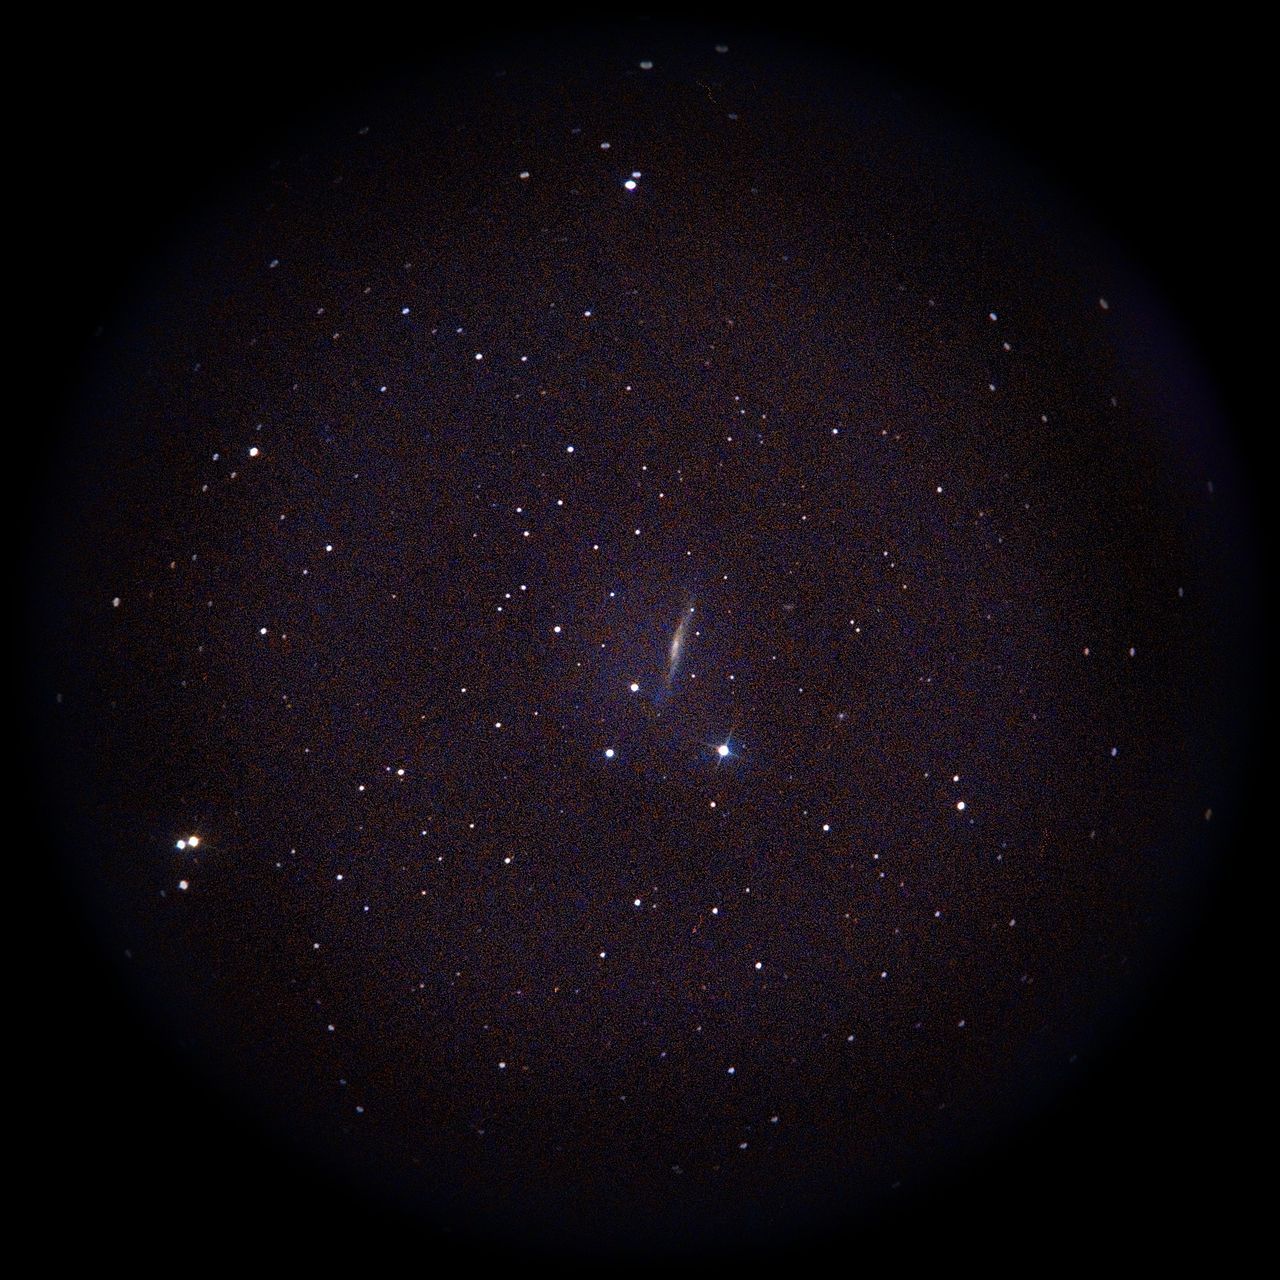 Image of NGC3079